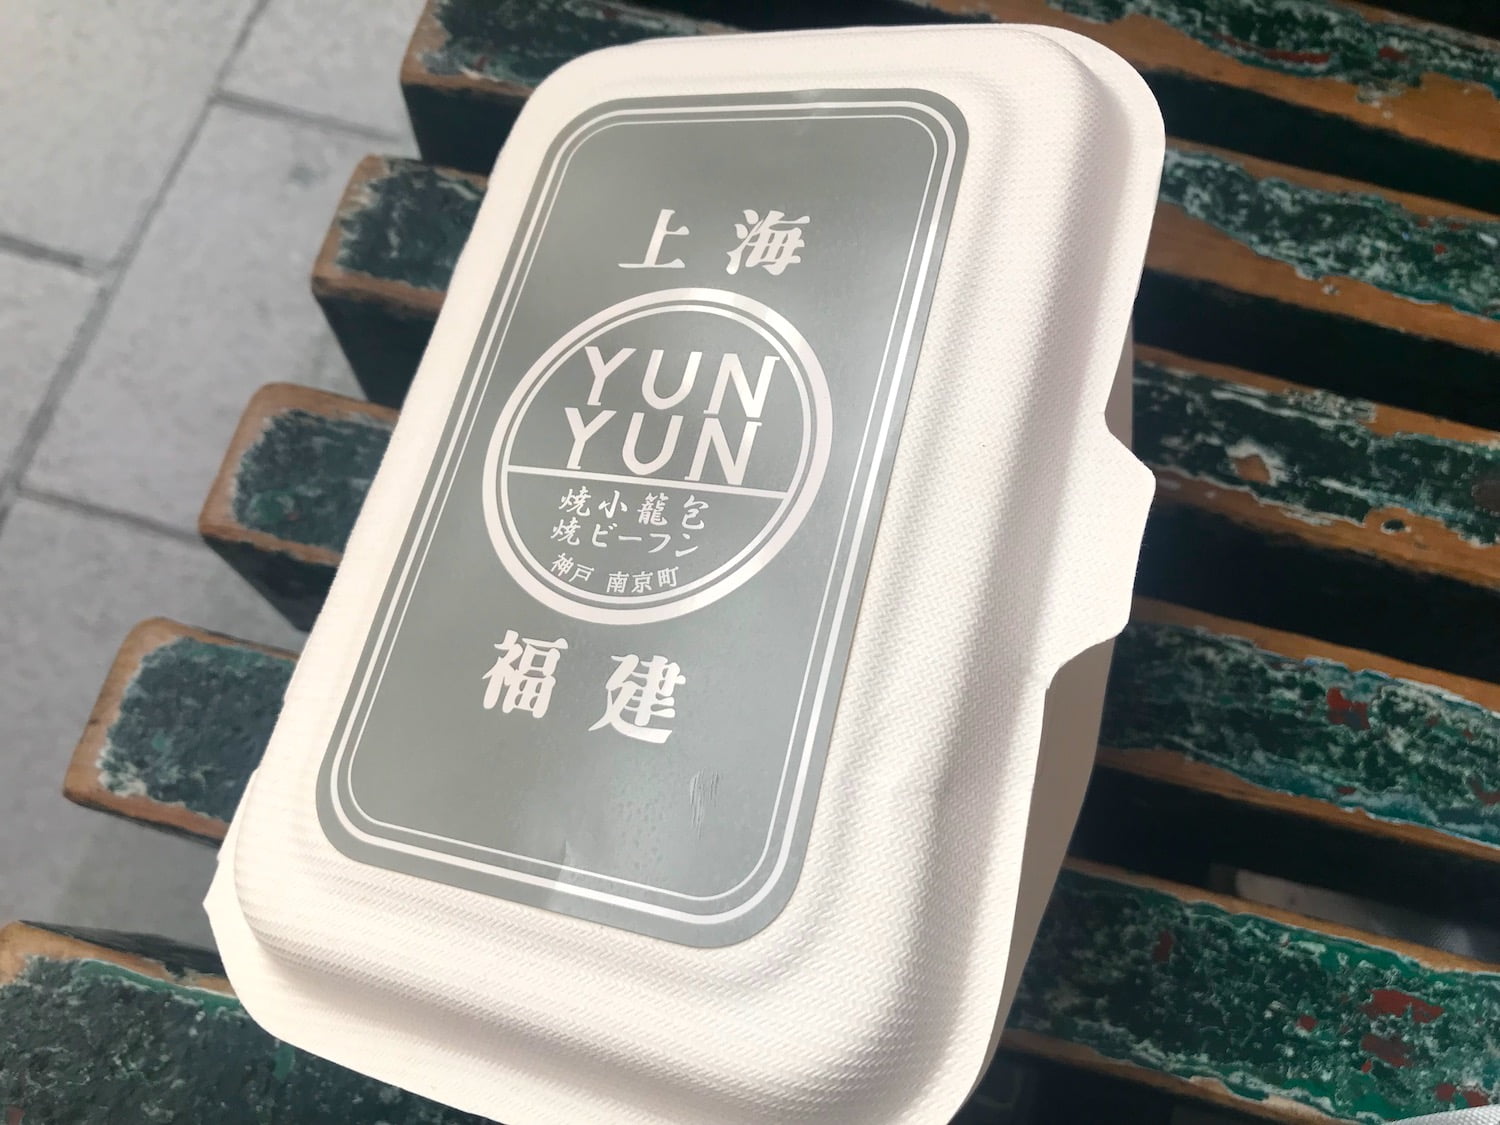 YUN YUN baked Shou ron pou